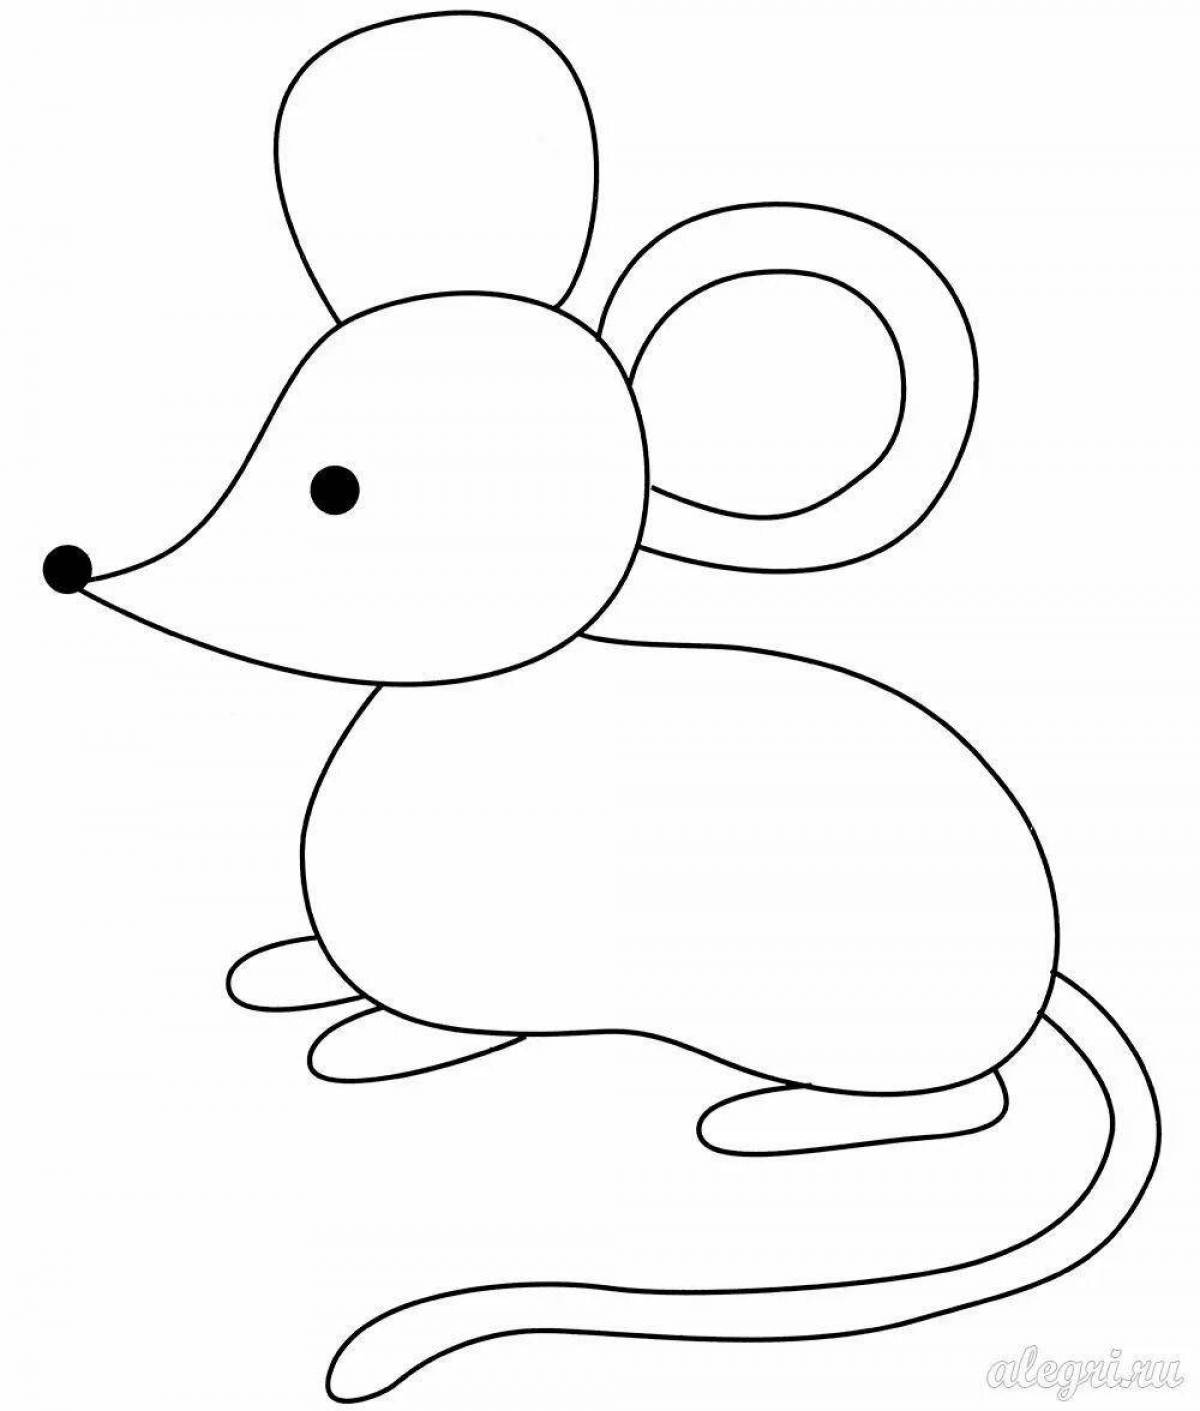 X-traordinary раскраска мышь для детей 2-3 лет